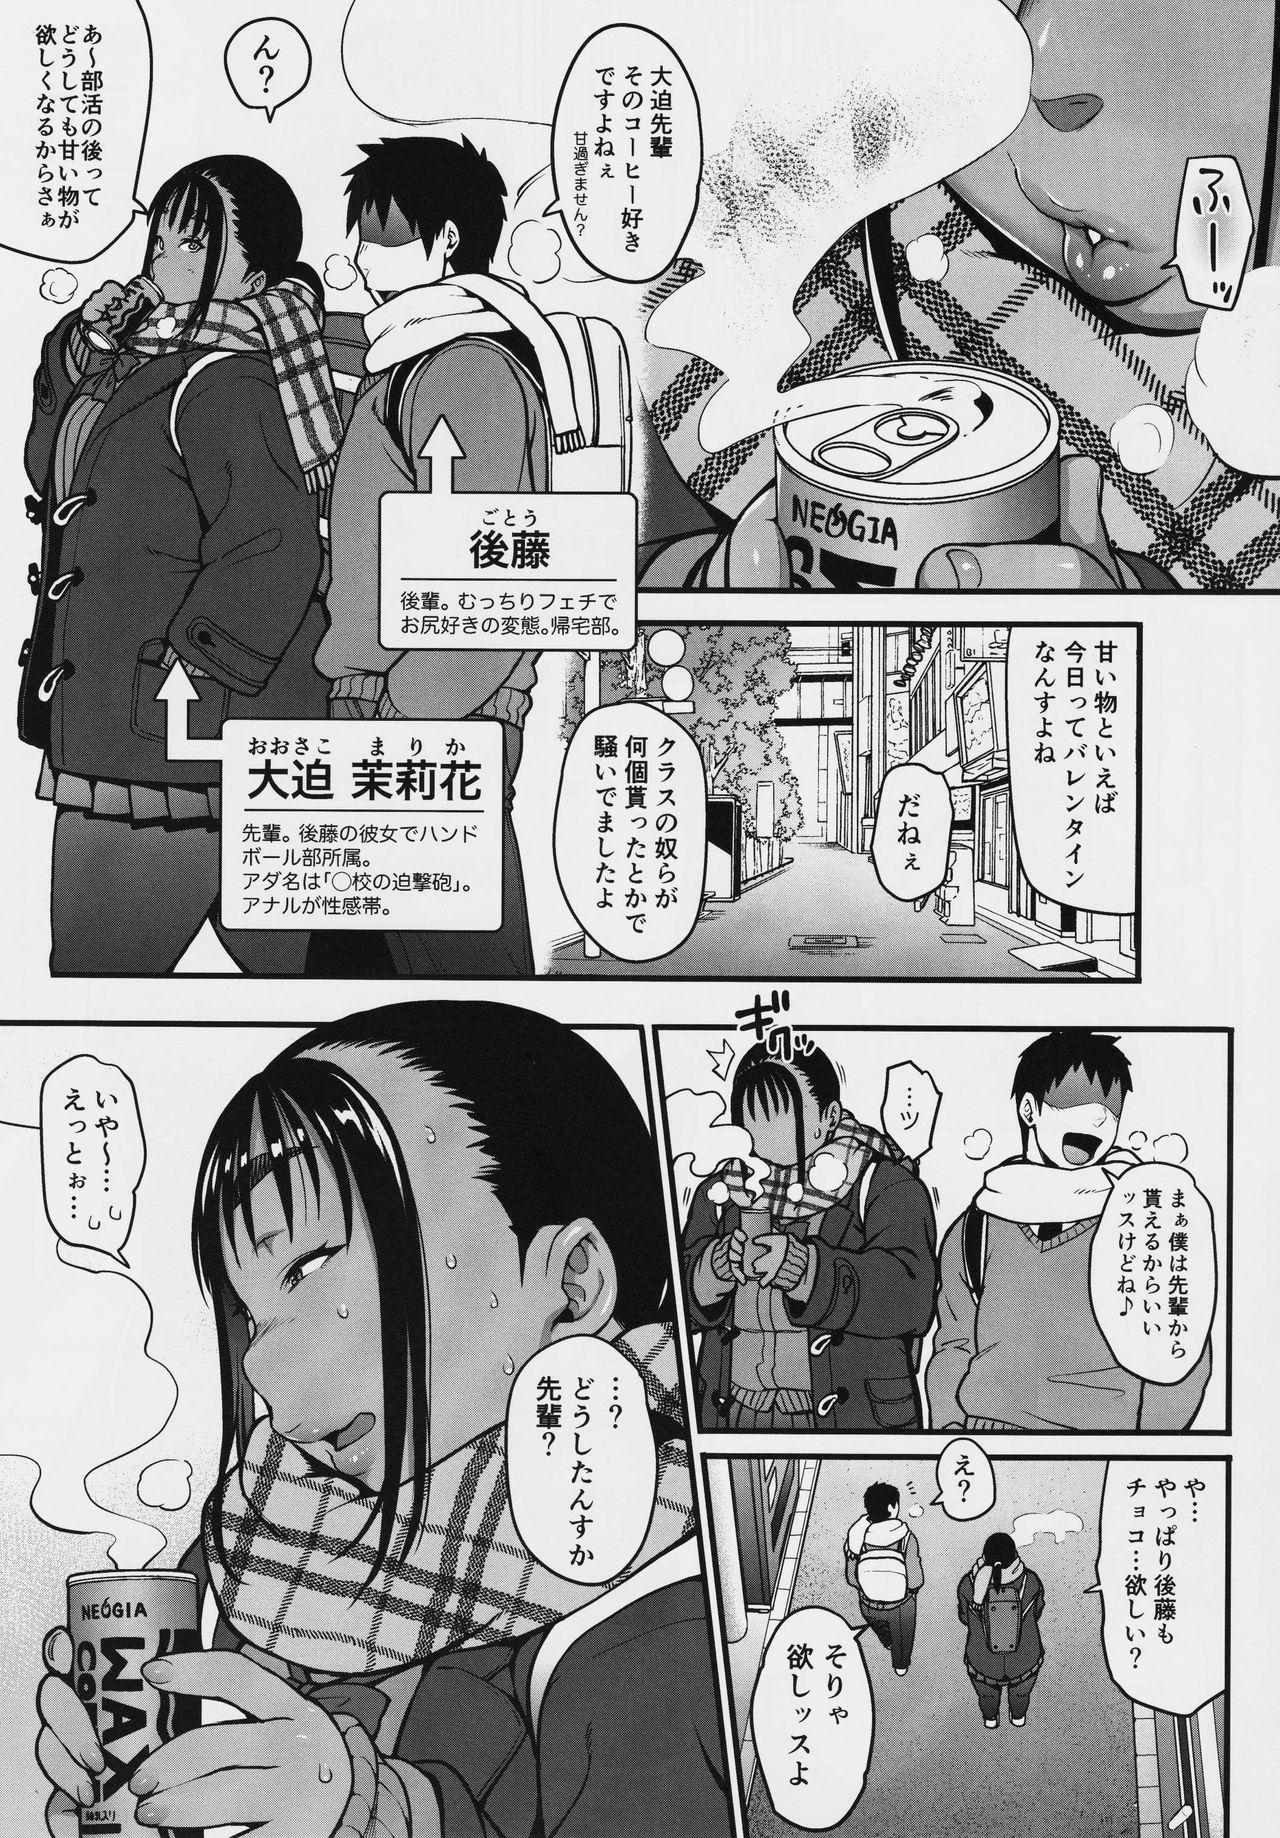 Negao Fuyu no Senpai no Oshiri* - Senpai's Booty of Winter Cartoon - Page 3